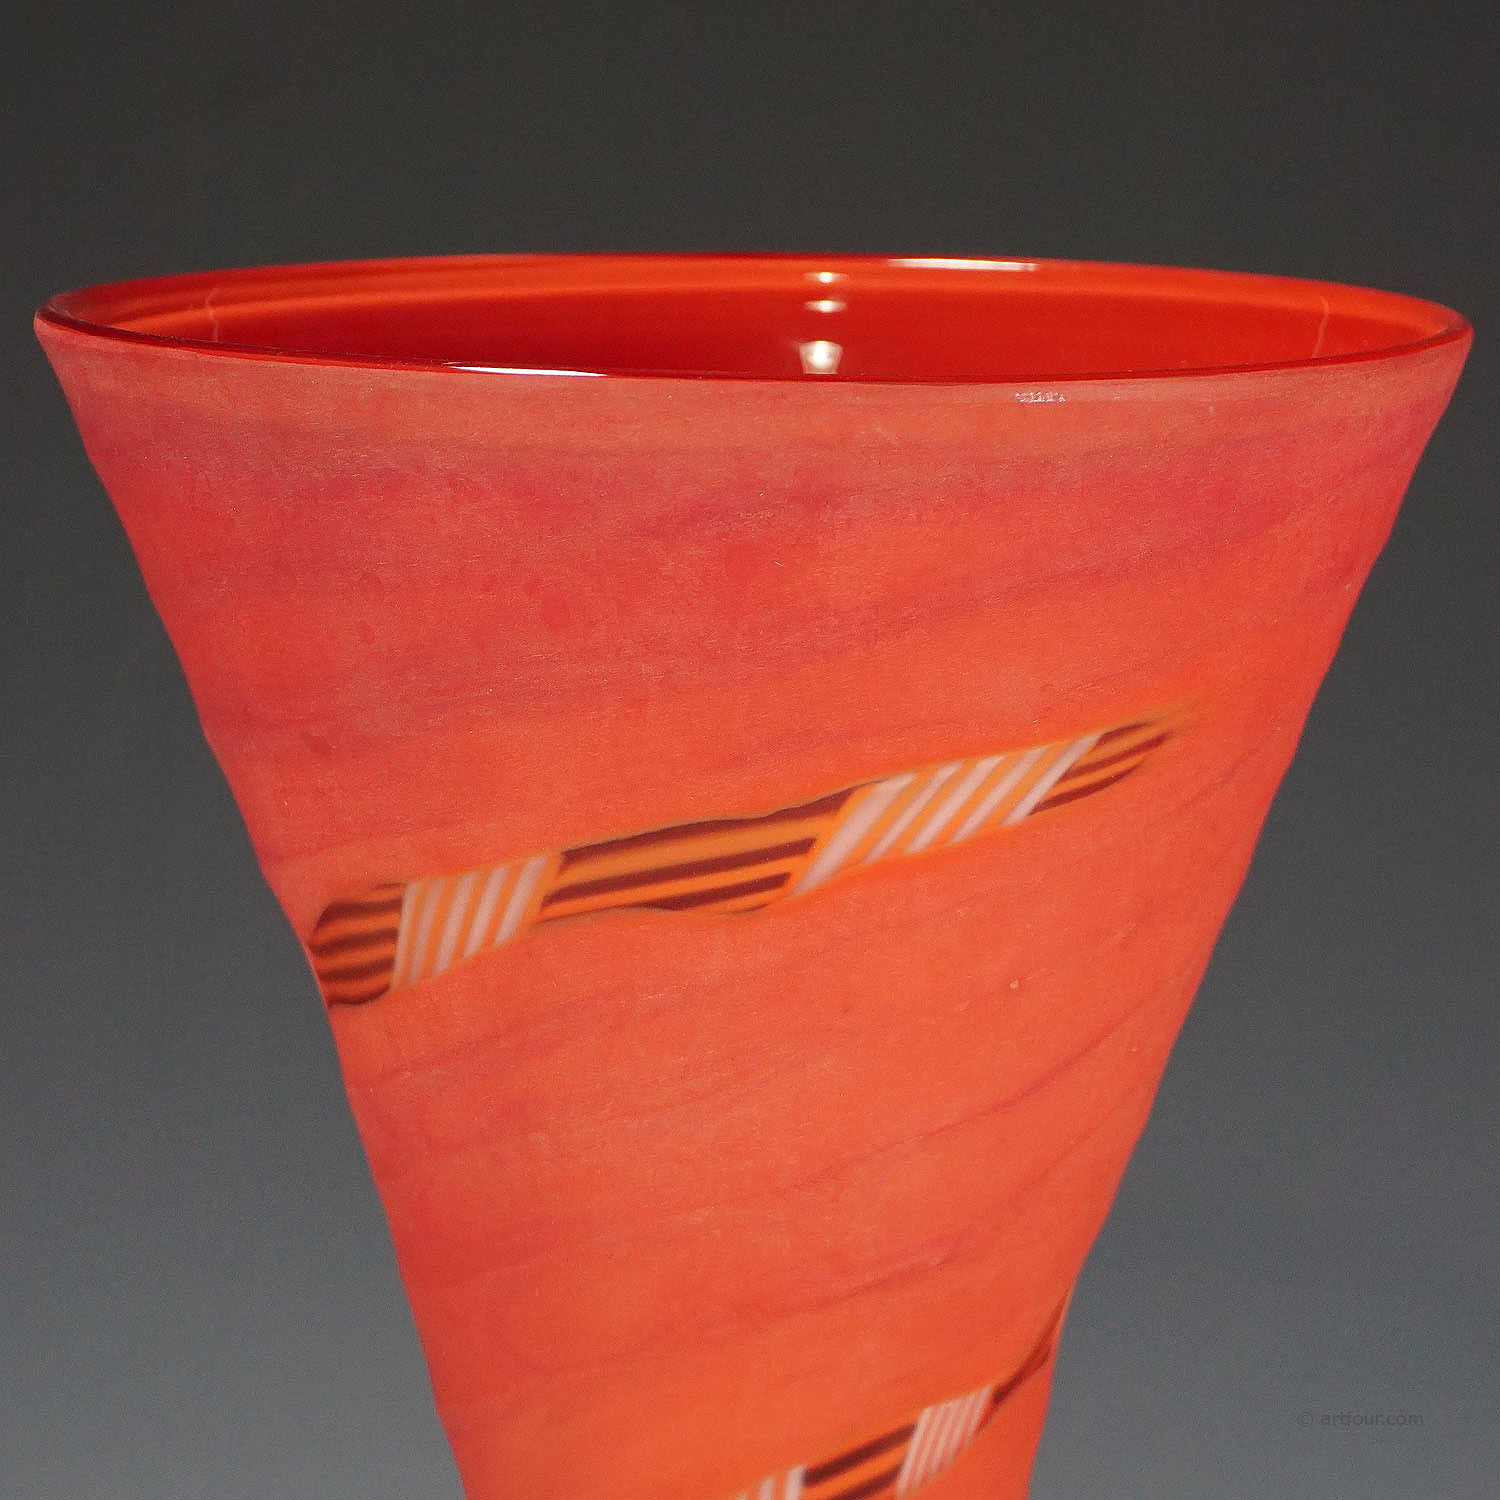 Vase 'Manto' designed by Rodolfo Dordoni for Venini, Murano